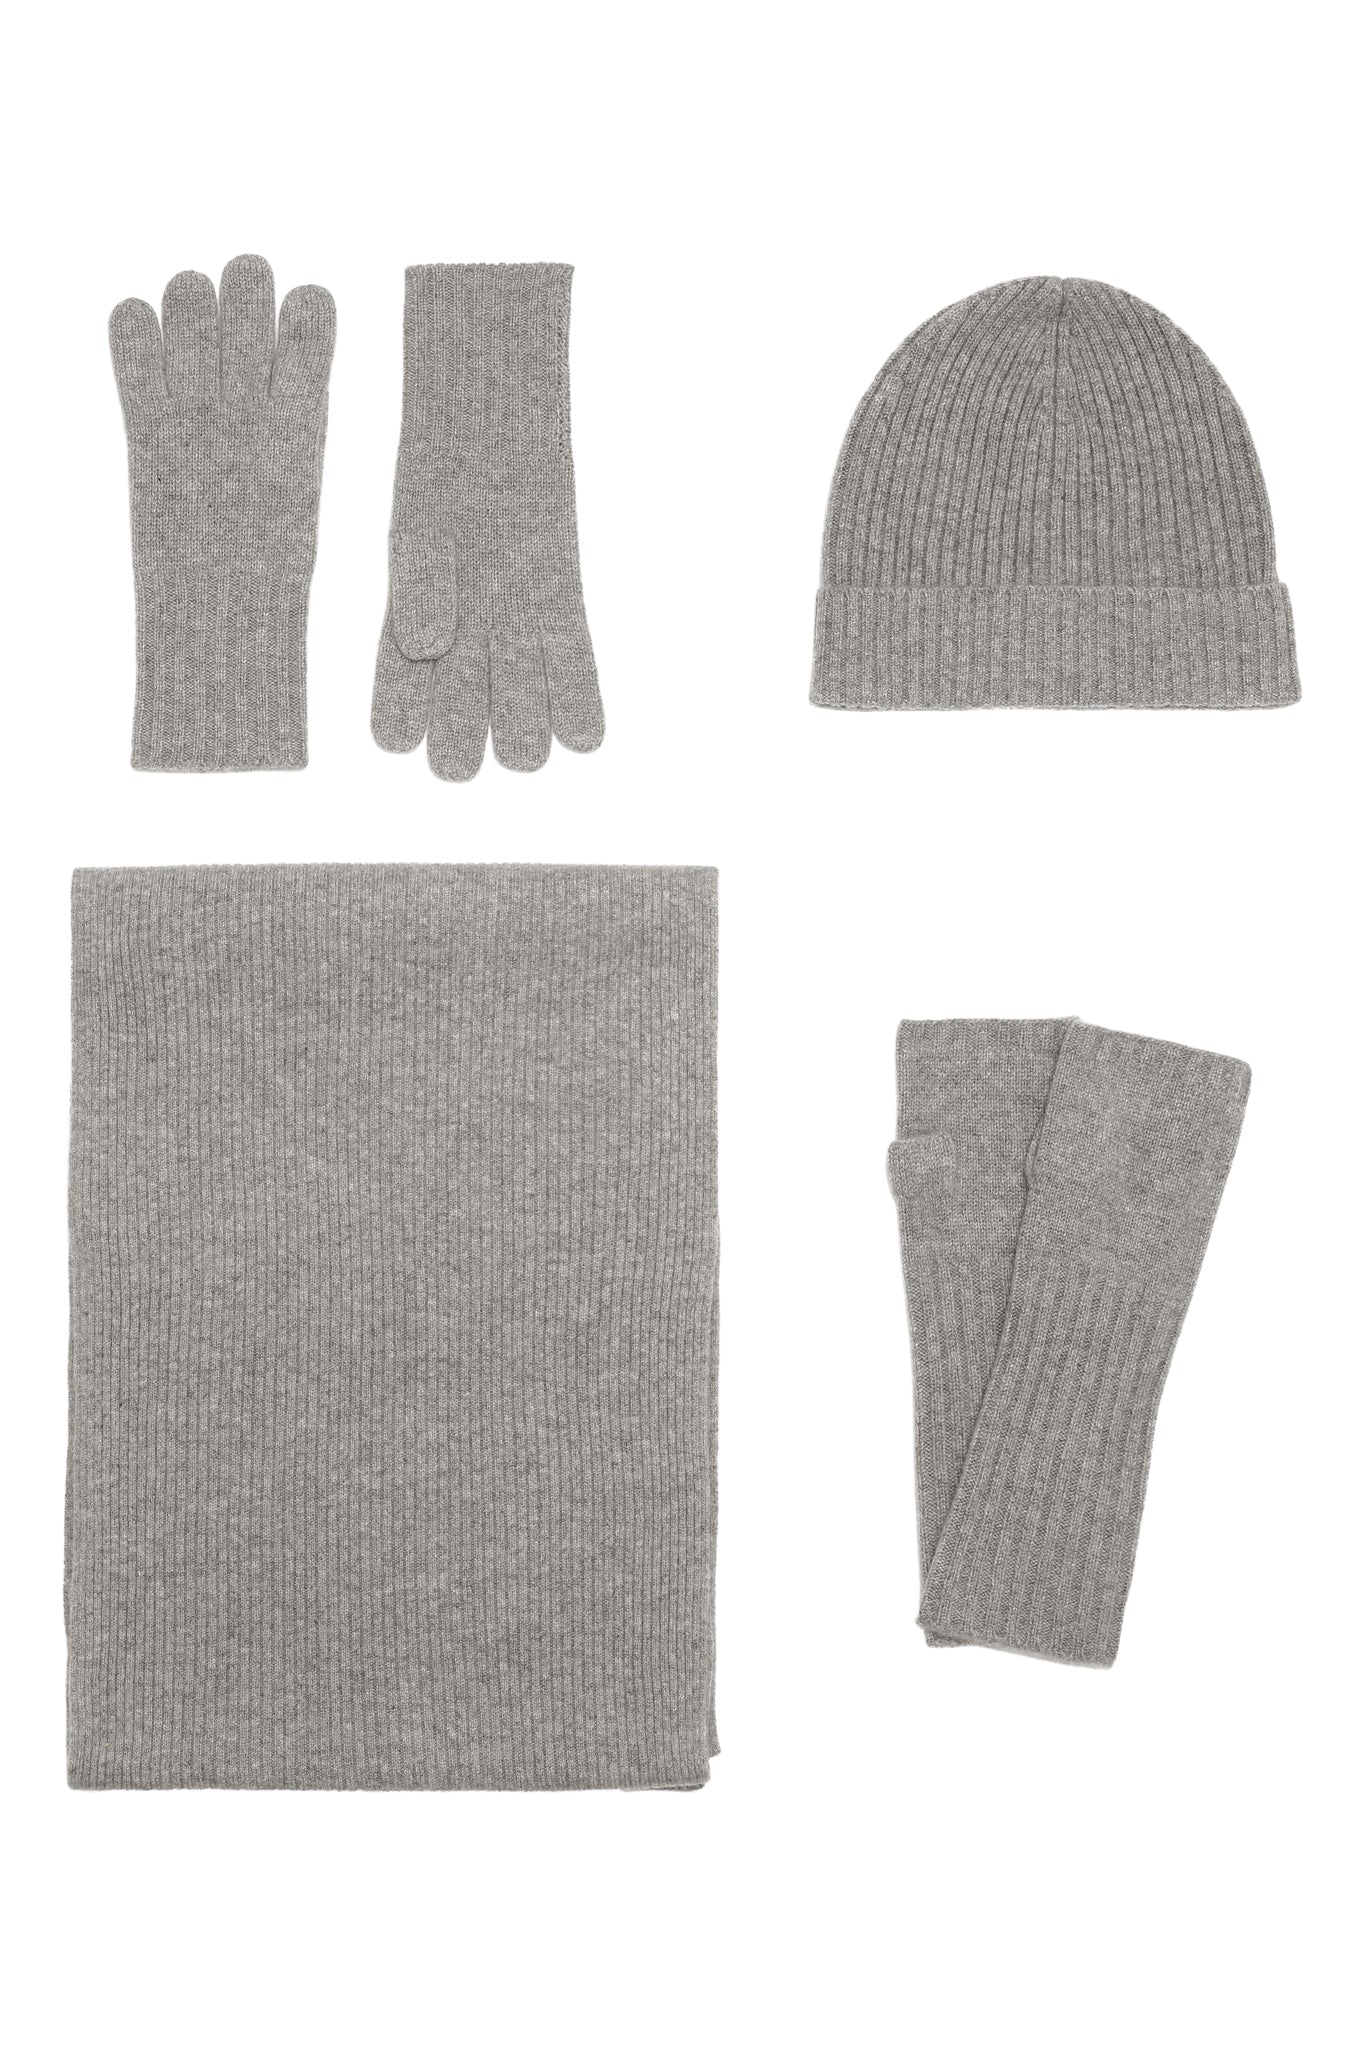 Robin - Handsker i strikket cashmere - Mellemgrå